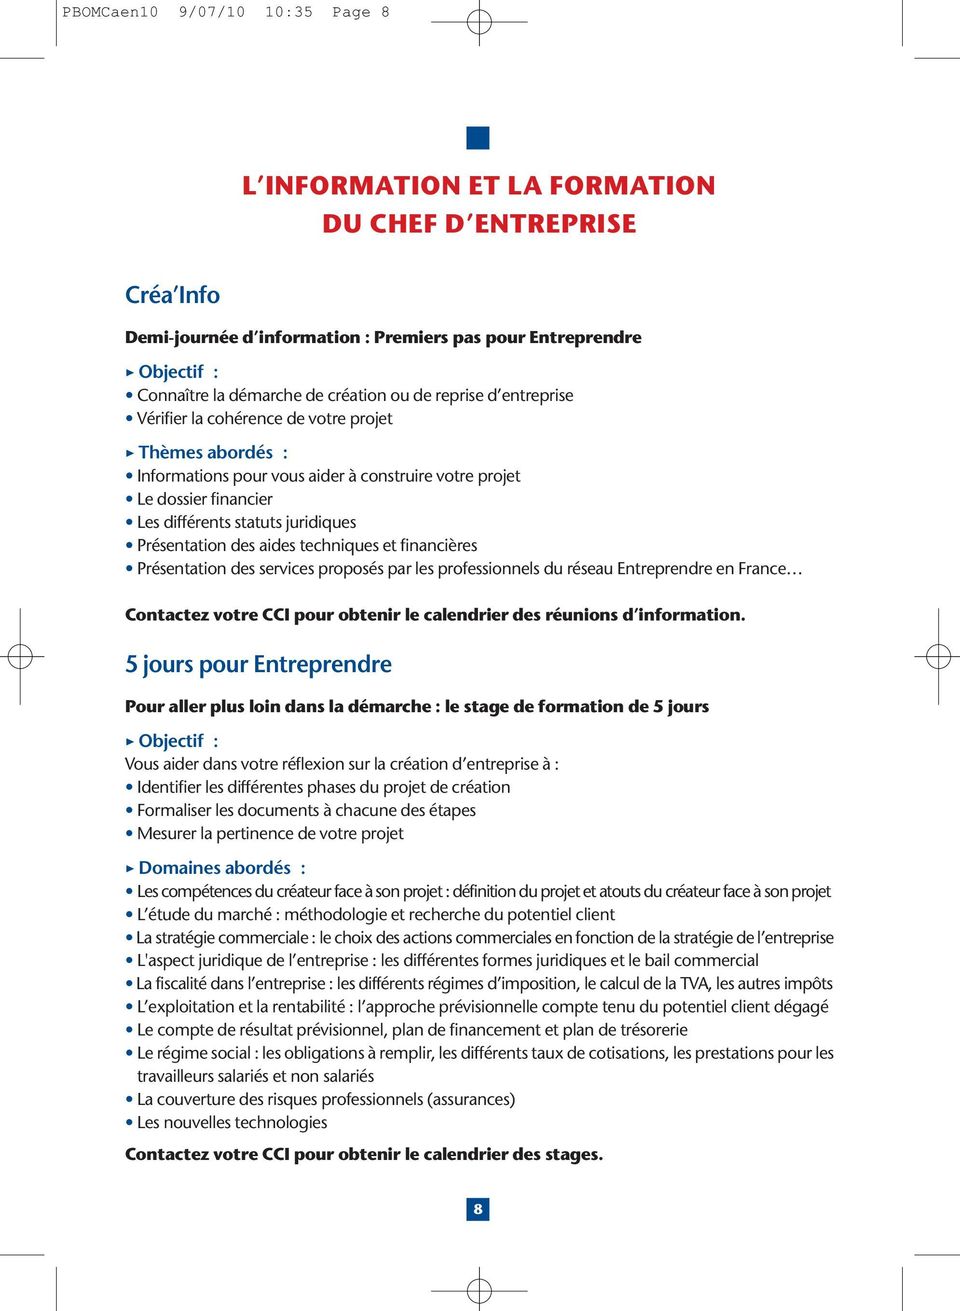 Présentation des aides techniques et financières Présentation des services proposés par les professionnels du réseau Entreprendre en France Contactez votre CCI pour obtenir le calendrier des réunions